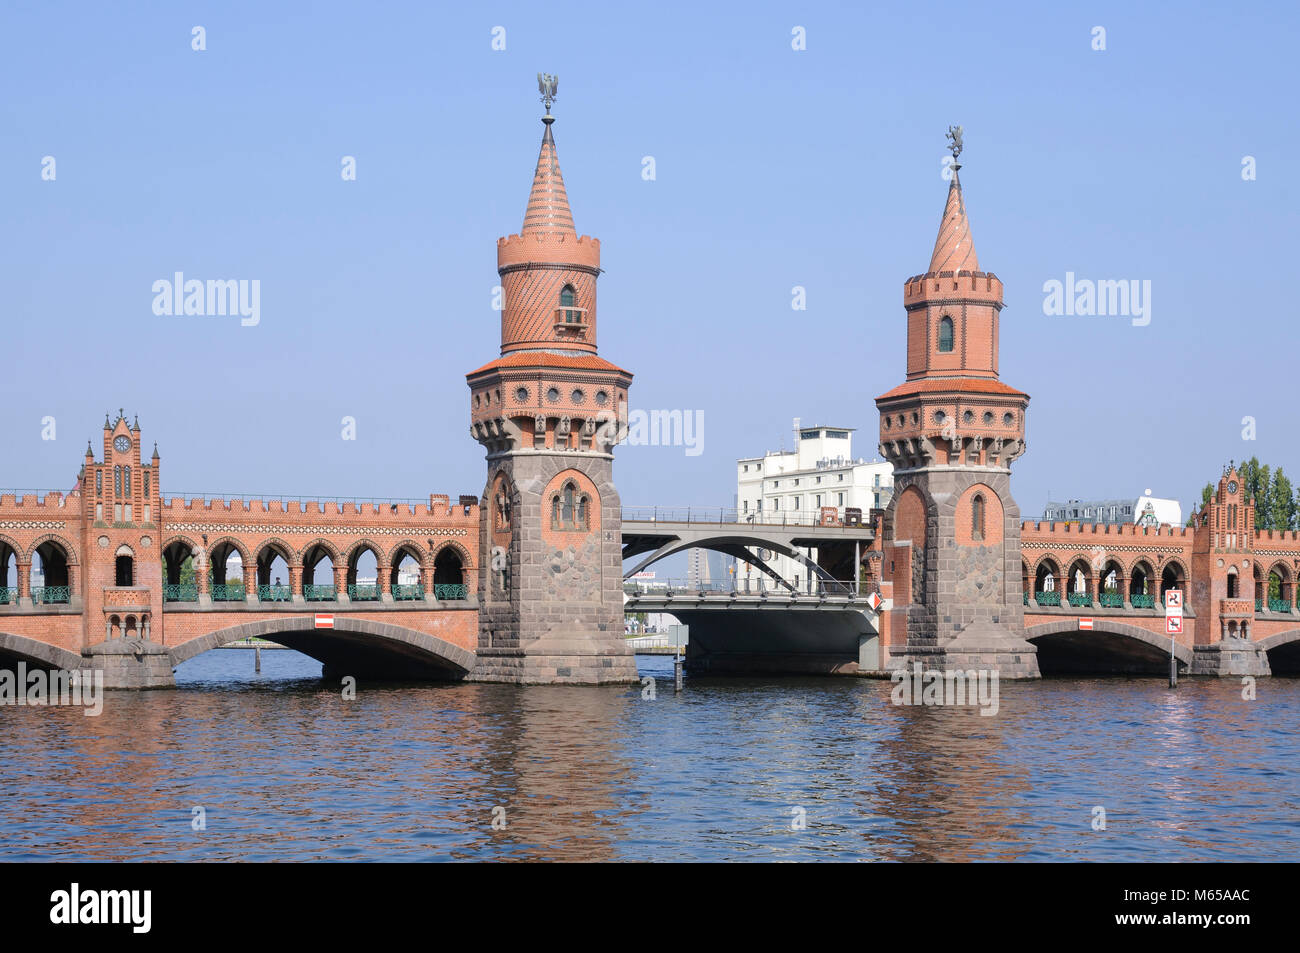 Oberbaumbrücke über die Spree zwischen Kreuzberg und Friedrichshain, Berlin, Deutschland, Europa Stock Photo